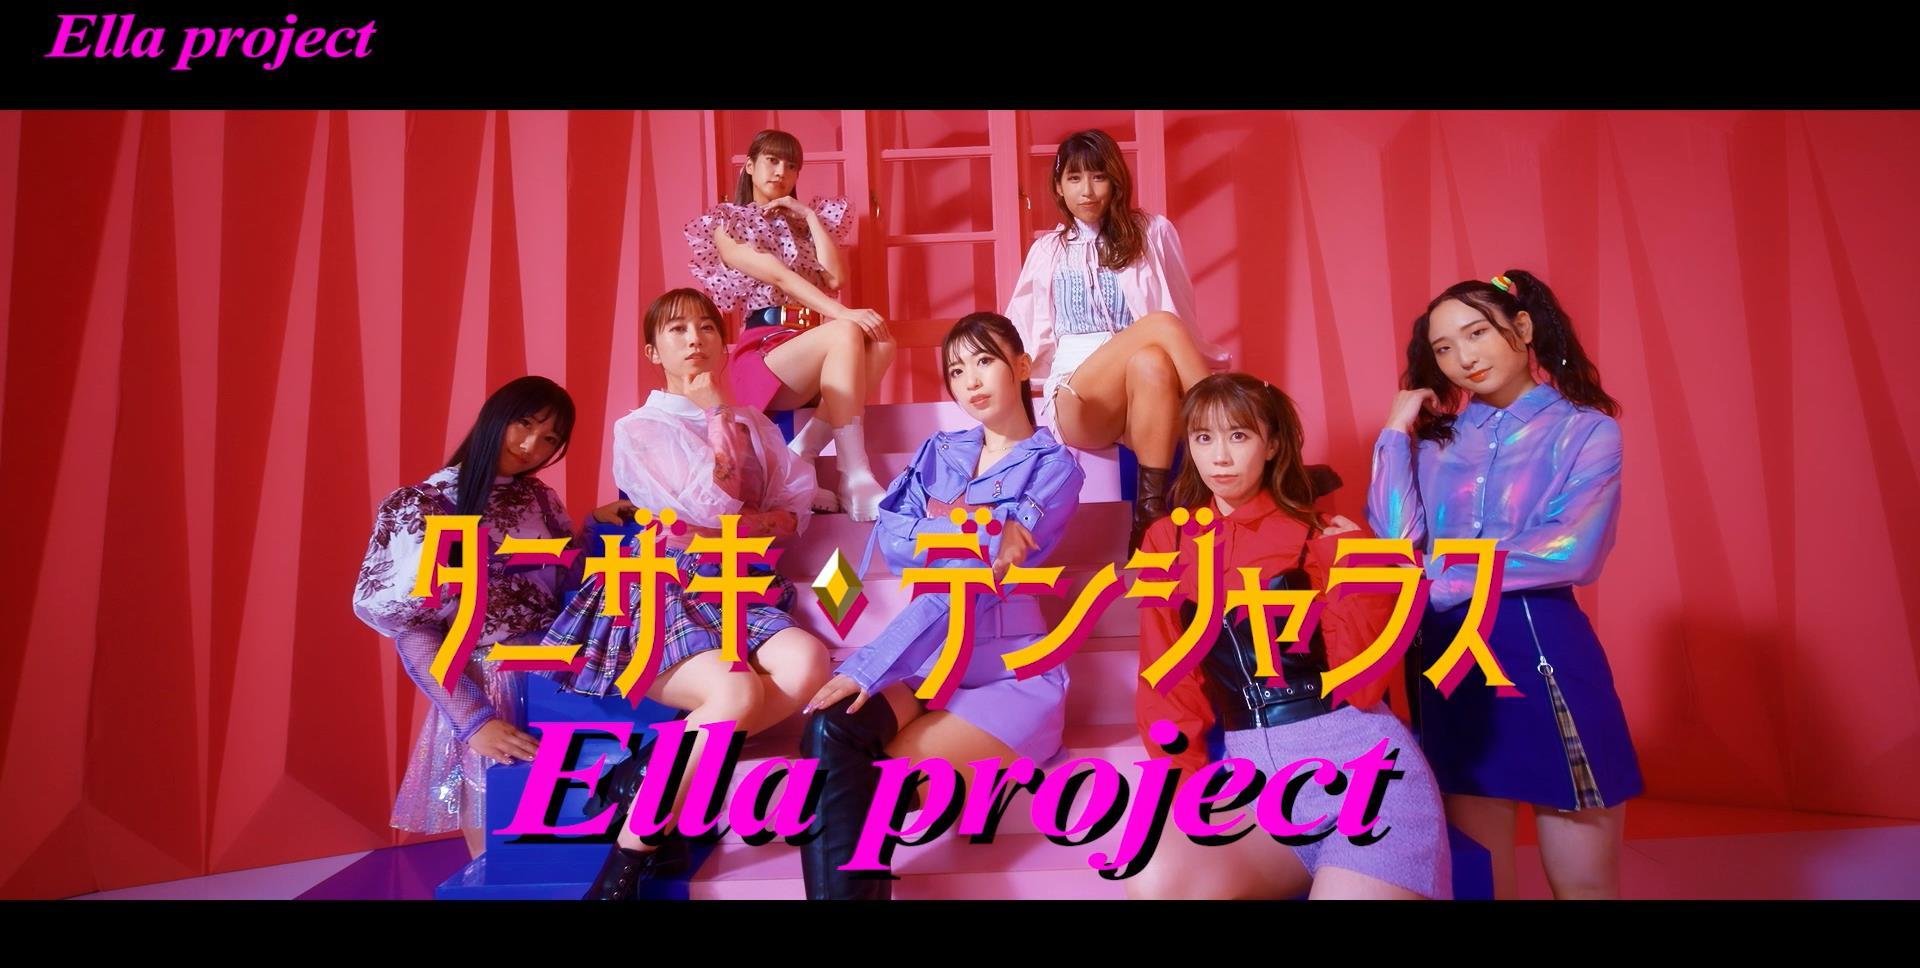 日本発の音楽プロジェクトElla projectが
グローバル展開をスタート　
Ella projectグローバル シンガー オーディションを開催　
～日・仏・台・韓で新たな才能の原石を大募集～